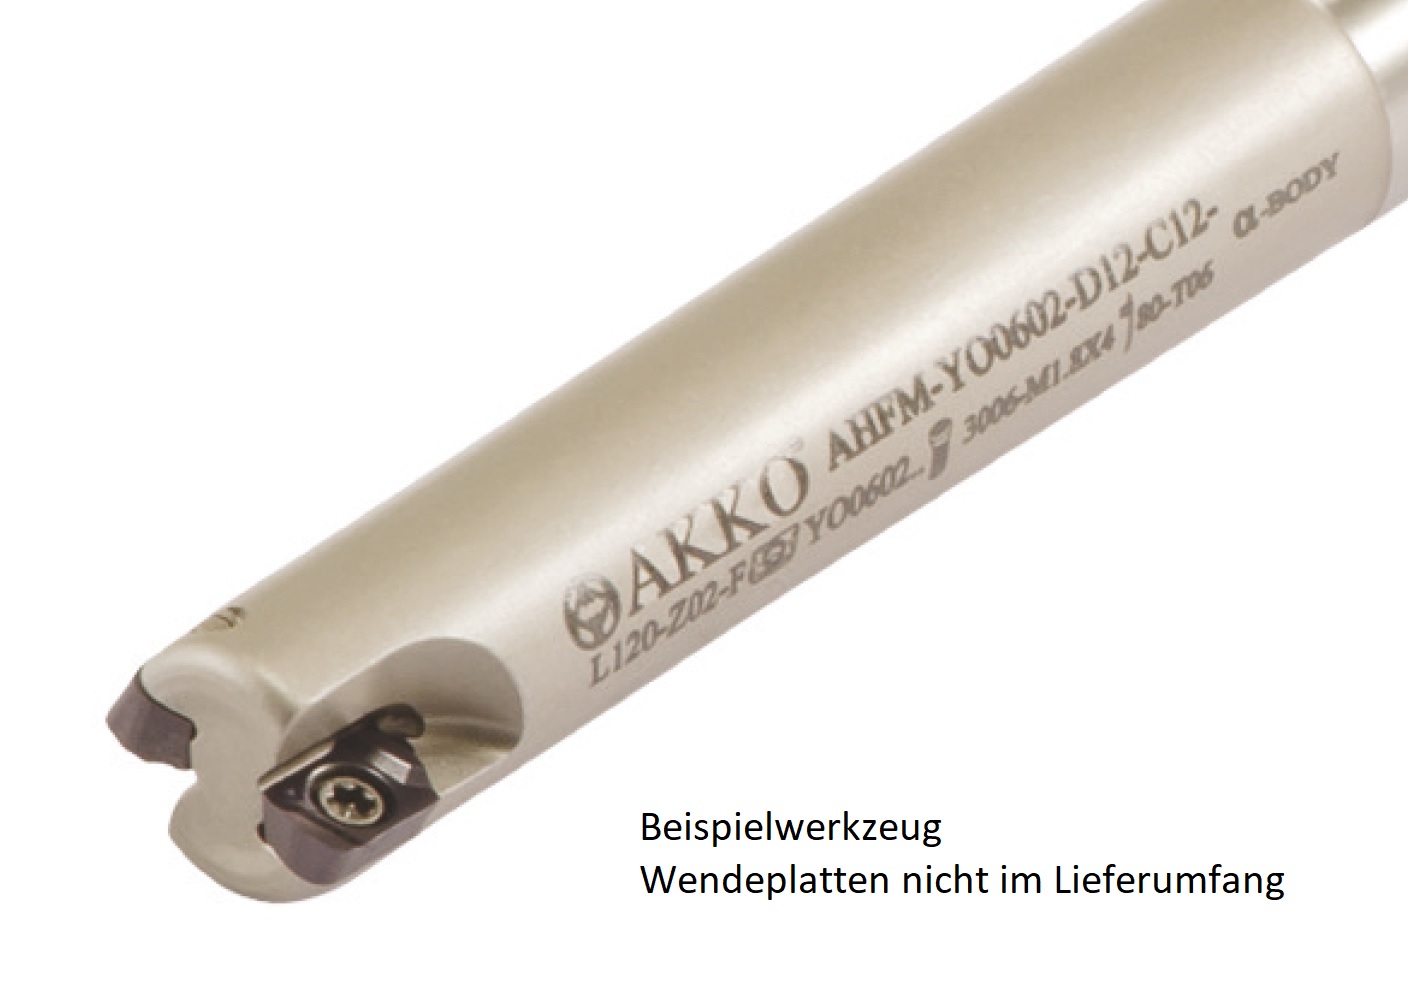 AKKO-Hochvorschub-Schaftfräser ø 12 mm, 90°, kompatibel mit Dijet YOHW 0602....
Schaft-ø 12, mit Innenkühlung, Z=3